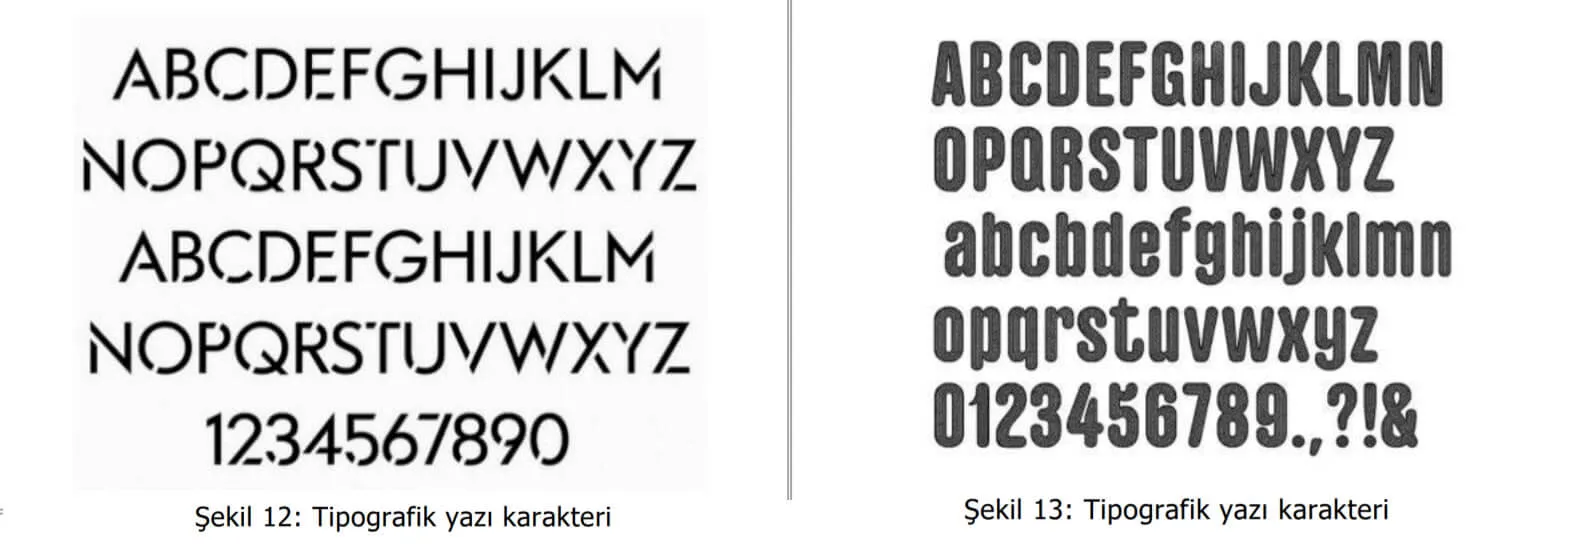 tipografik yazı karakter örnekleri-Eskisehir patent